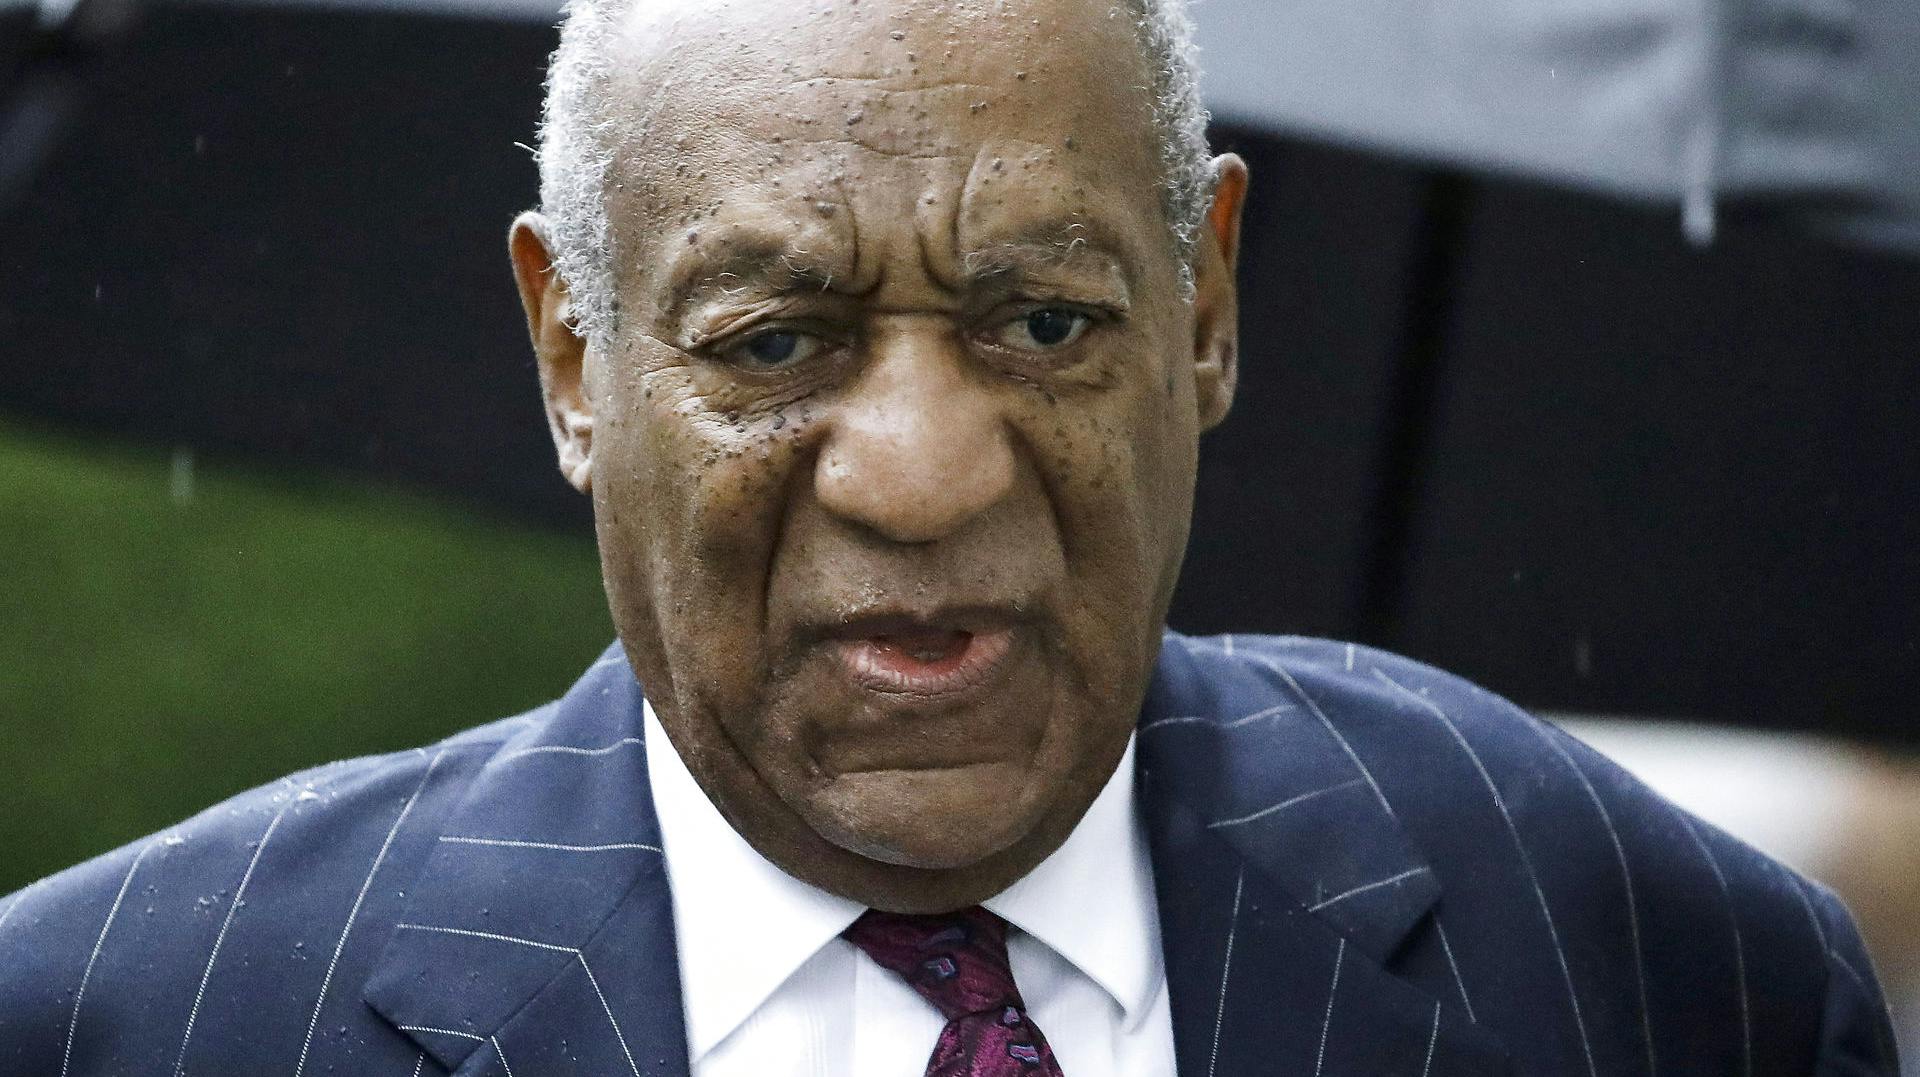 Derouten er nærmest uendelig for den tidligere så populære skuespiller Bill Cosby. Nu er fem kvinder stået frem med flere anklager om seksuelle overgreb begået af den nu 85-årige mand fra 60'erne og frem.